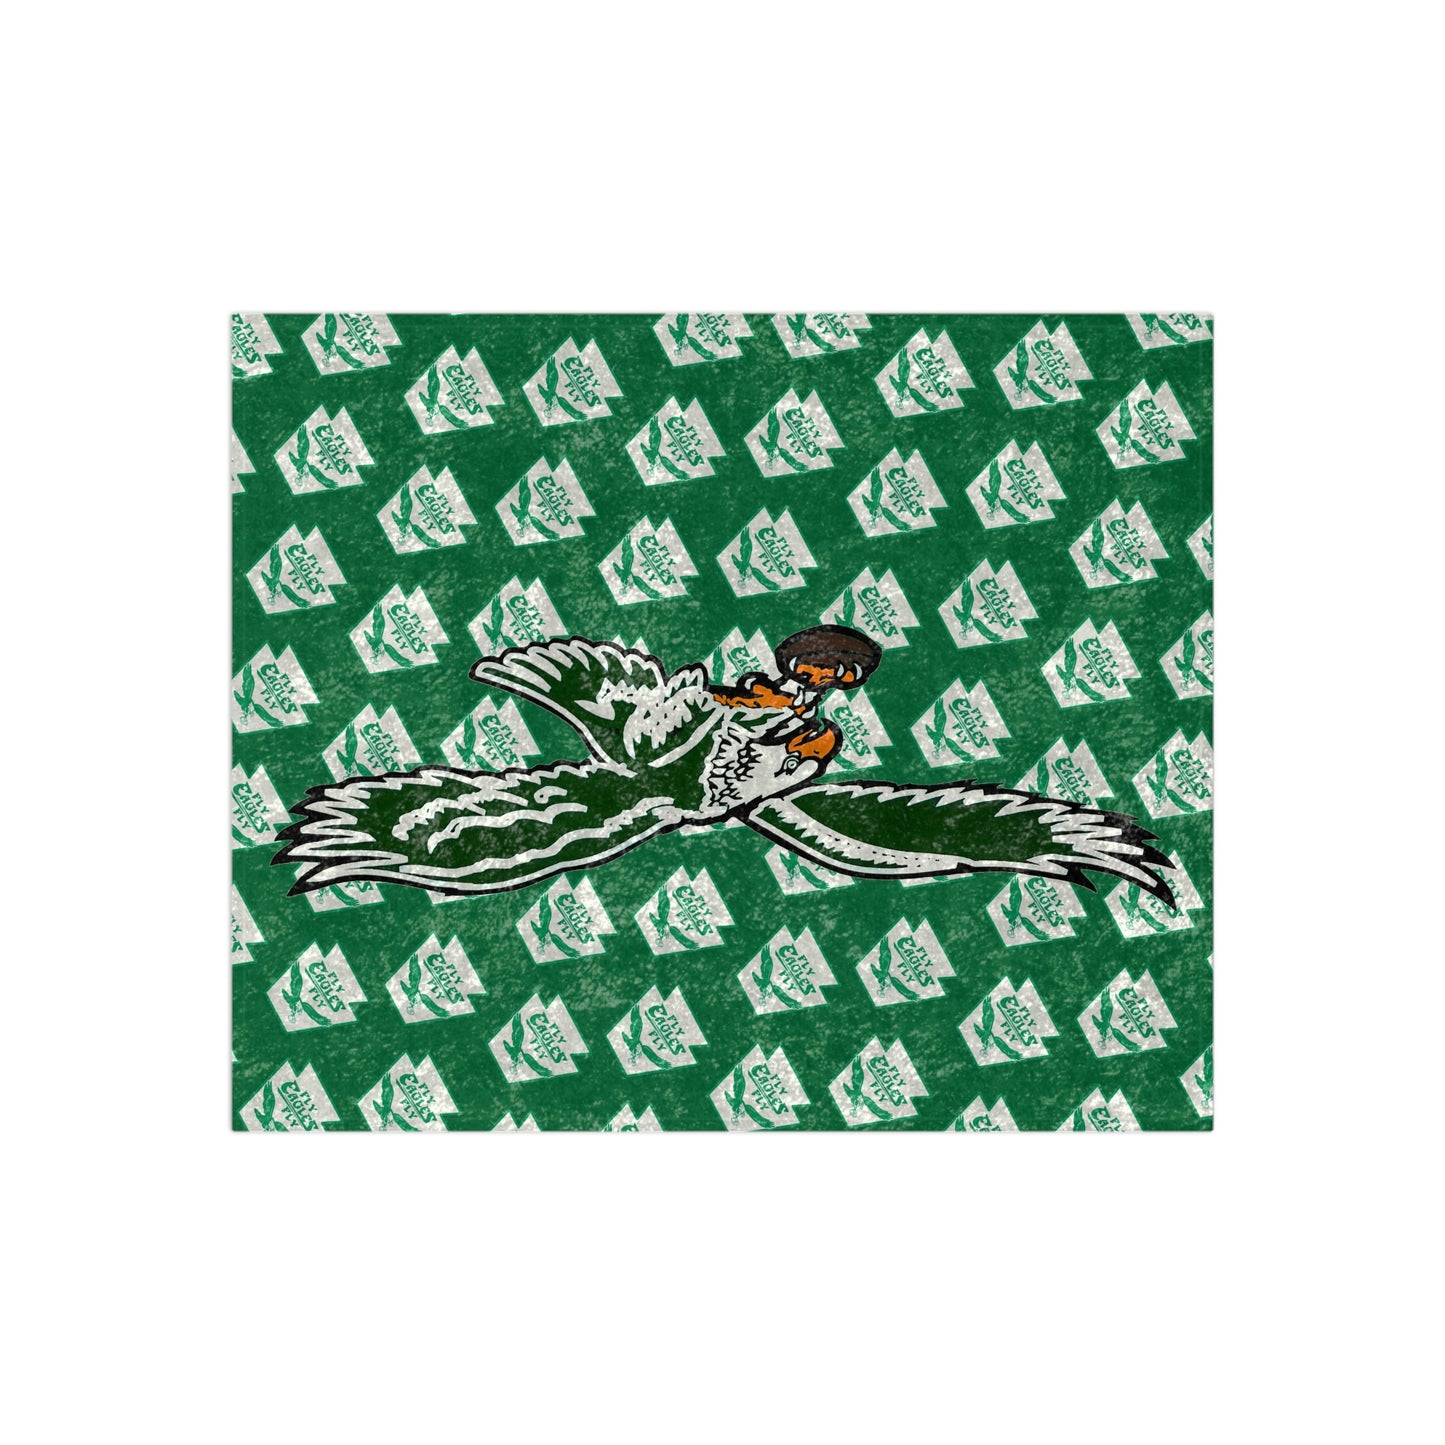 Green Philadelphia Eagles Crushed Velvet Blanket